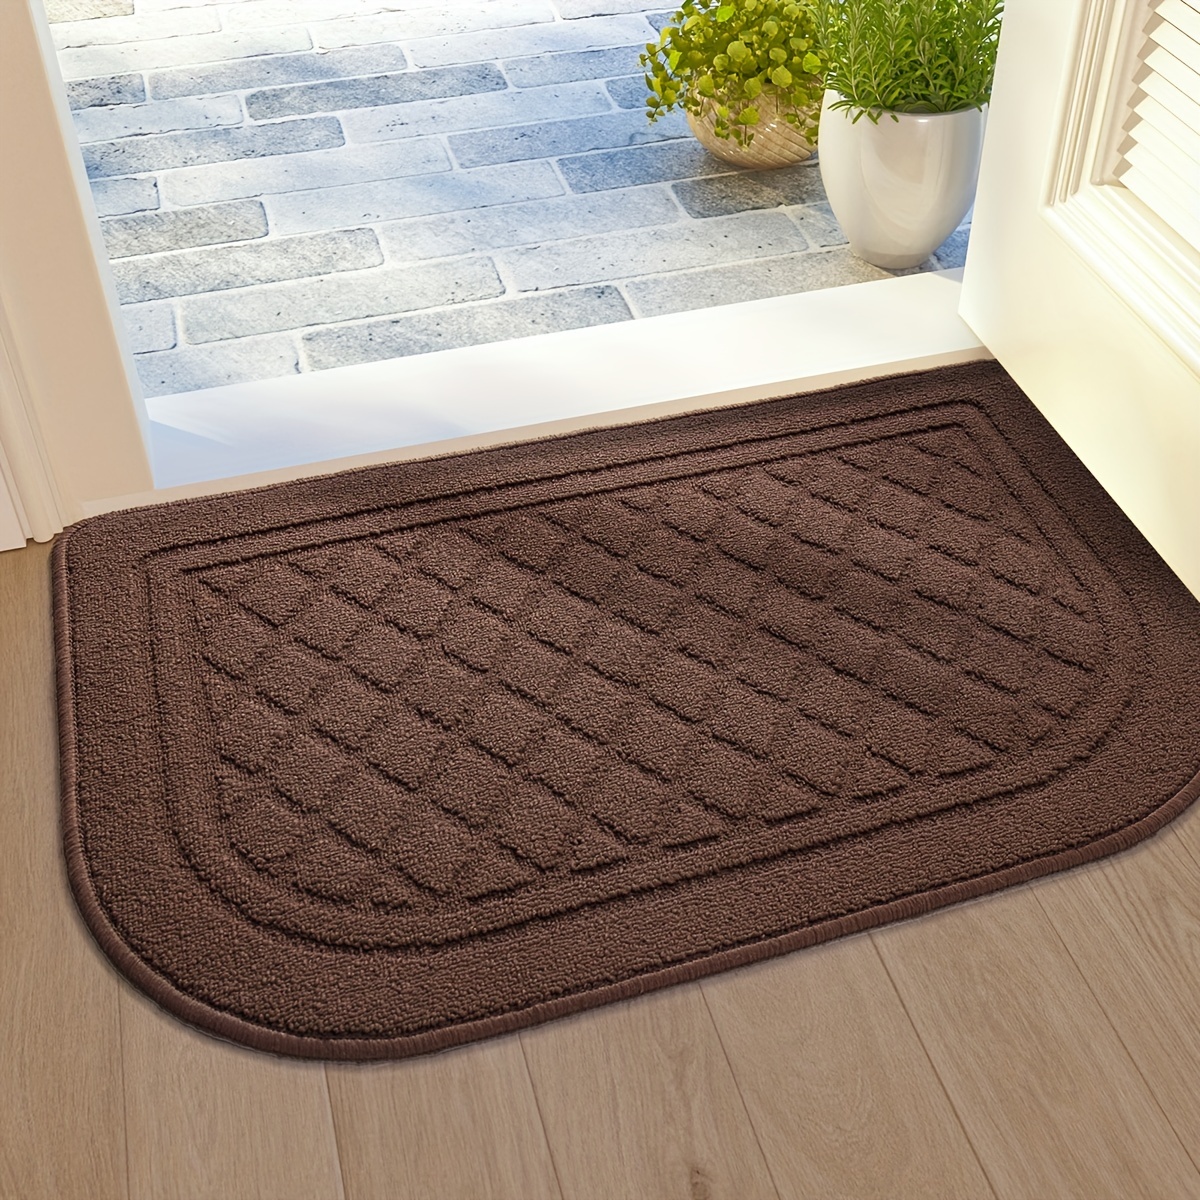 DEXI Front Door Mat Indoor Outdoor Doormat, Durable Heavy Duty